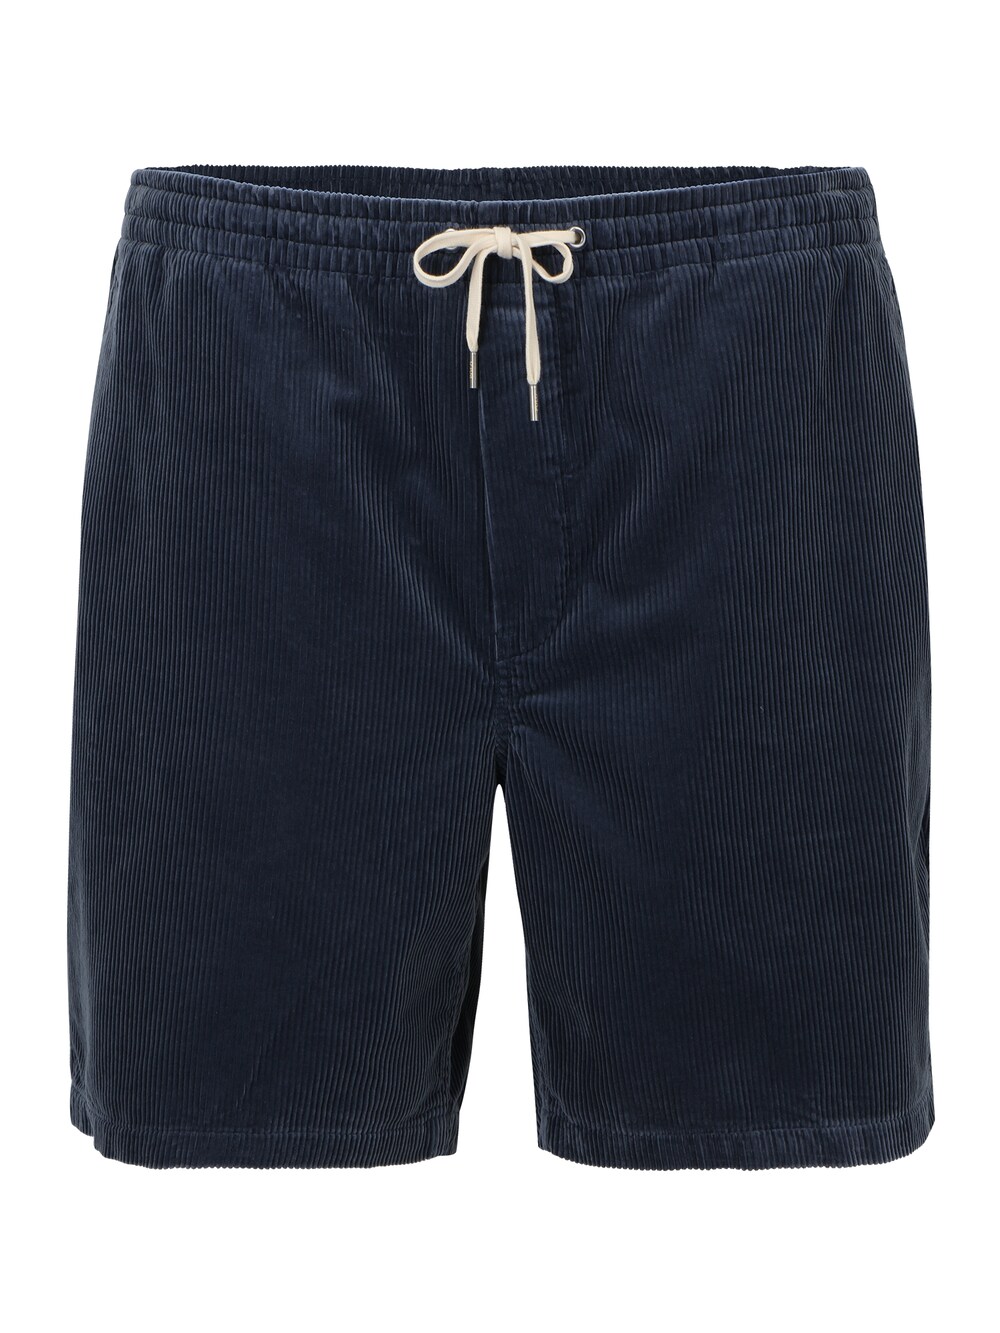 Обычные брюки Polo Ralph Lauren Big & Tall, темно-синий детские брюки 134 176 см polo ralph lauren темно синий